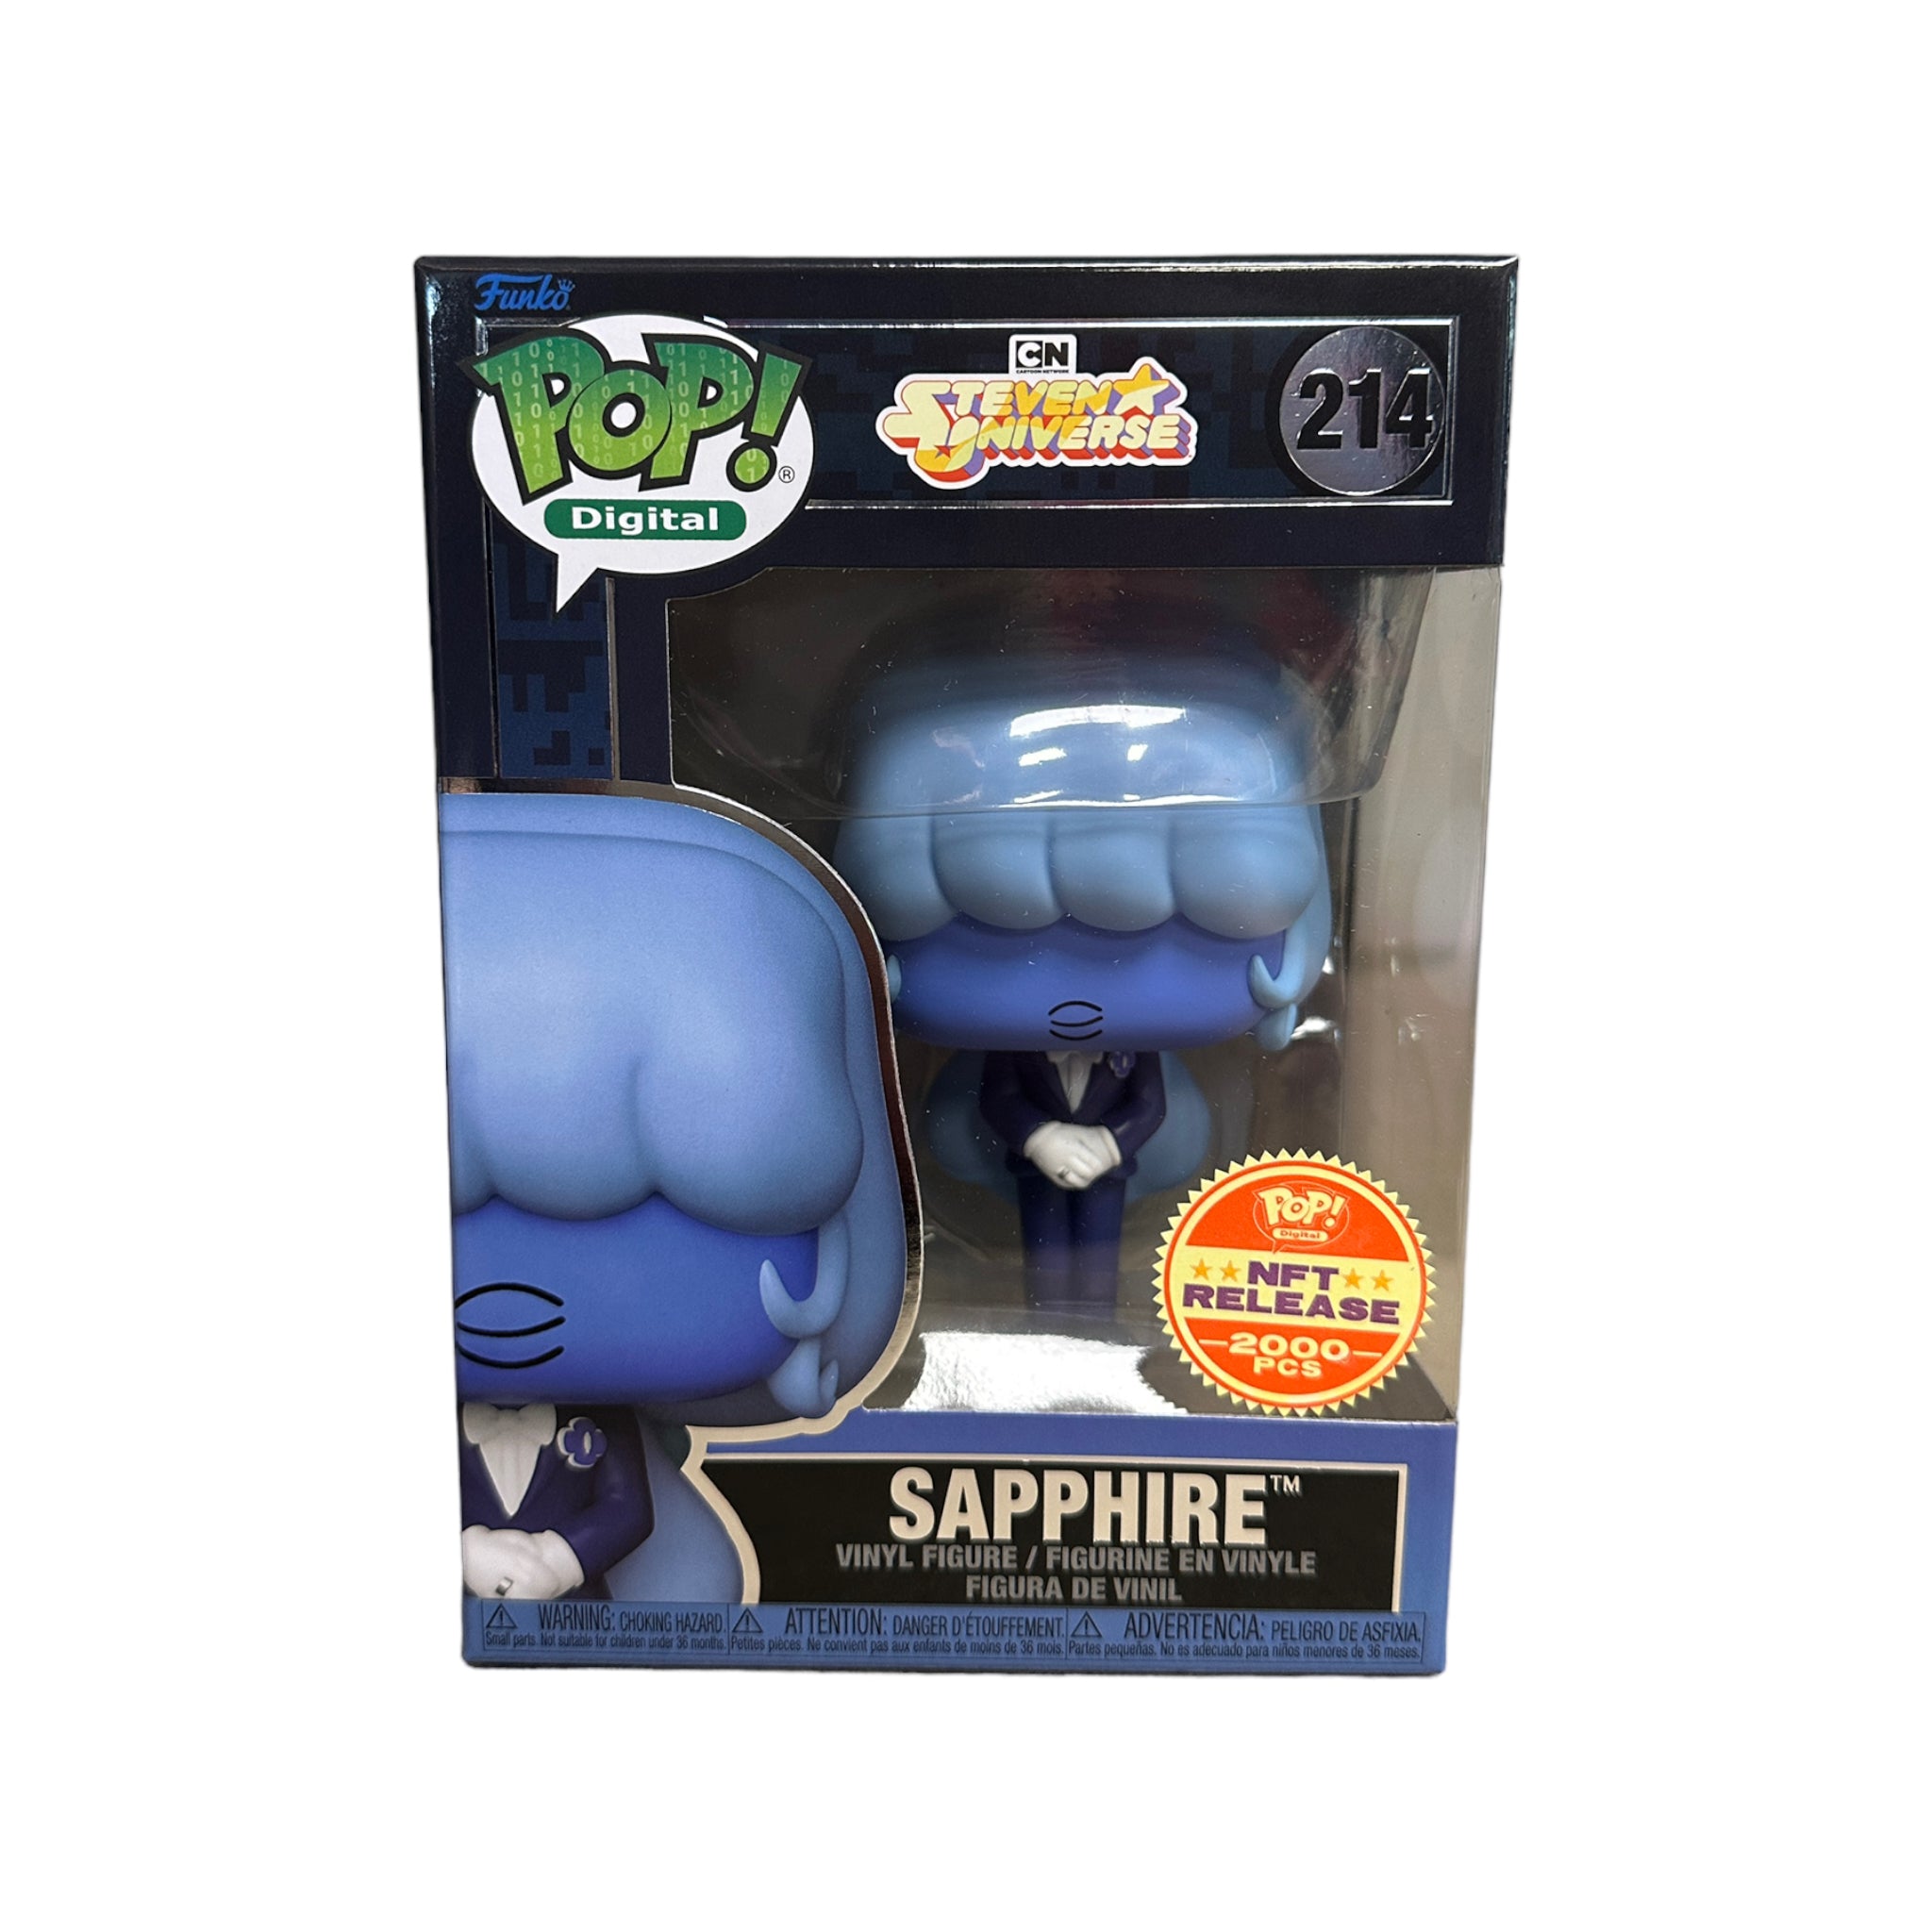 Sapphire #214 Funko Pop! - Steven Universe - NFT Release Exclusive LE2000 Pieces - Condition 9/10